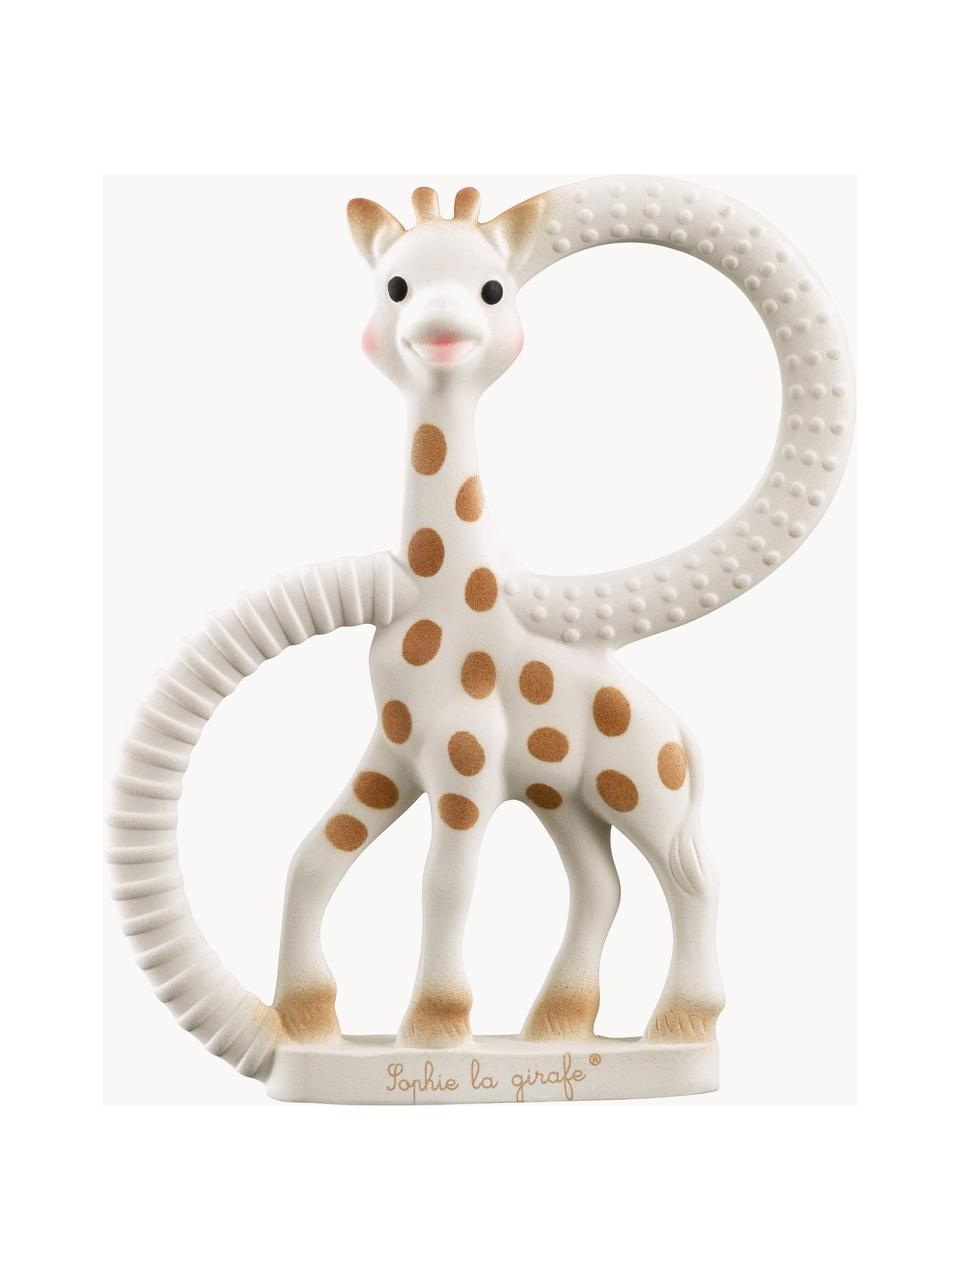 Gryzak Sophie la girafe, 100% naturalny kauczuk, Biały, brązowy, S 9 x W 12 cm